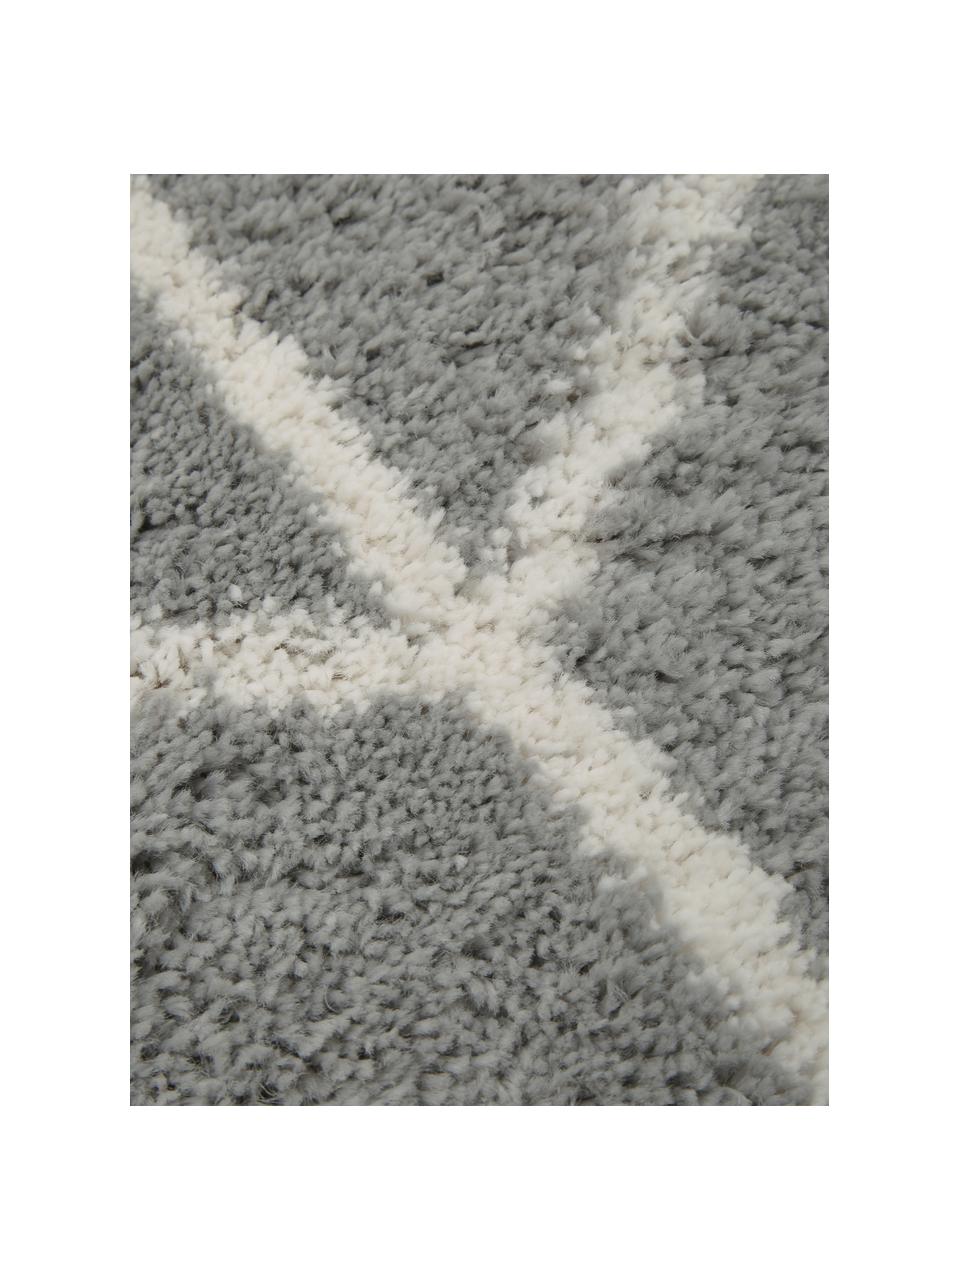 Runder Hochflor-Teppich Cera in Grau/Creme, Flor: 100% Polypropylen, Grau, Cremeweiß, Ø 150 cm (Größe M)